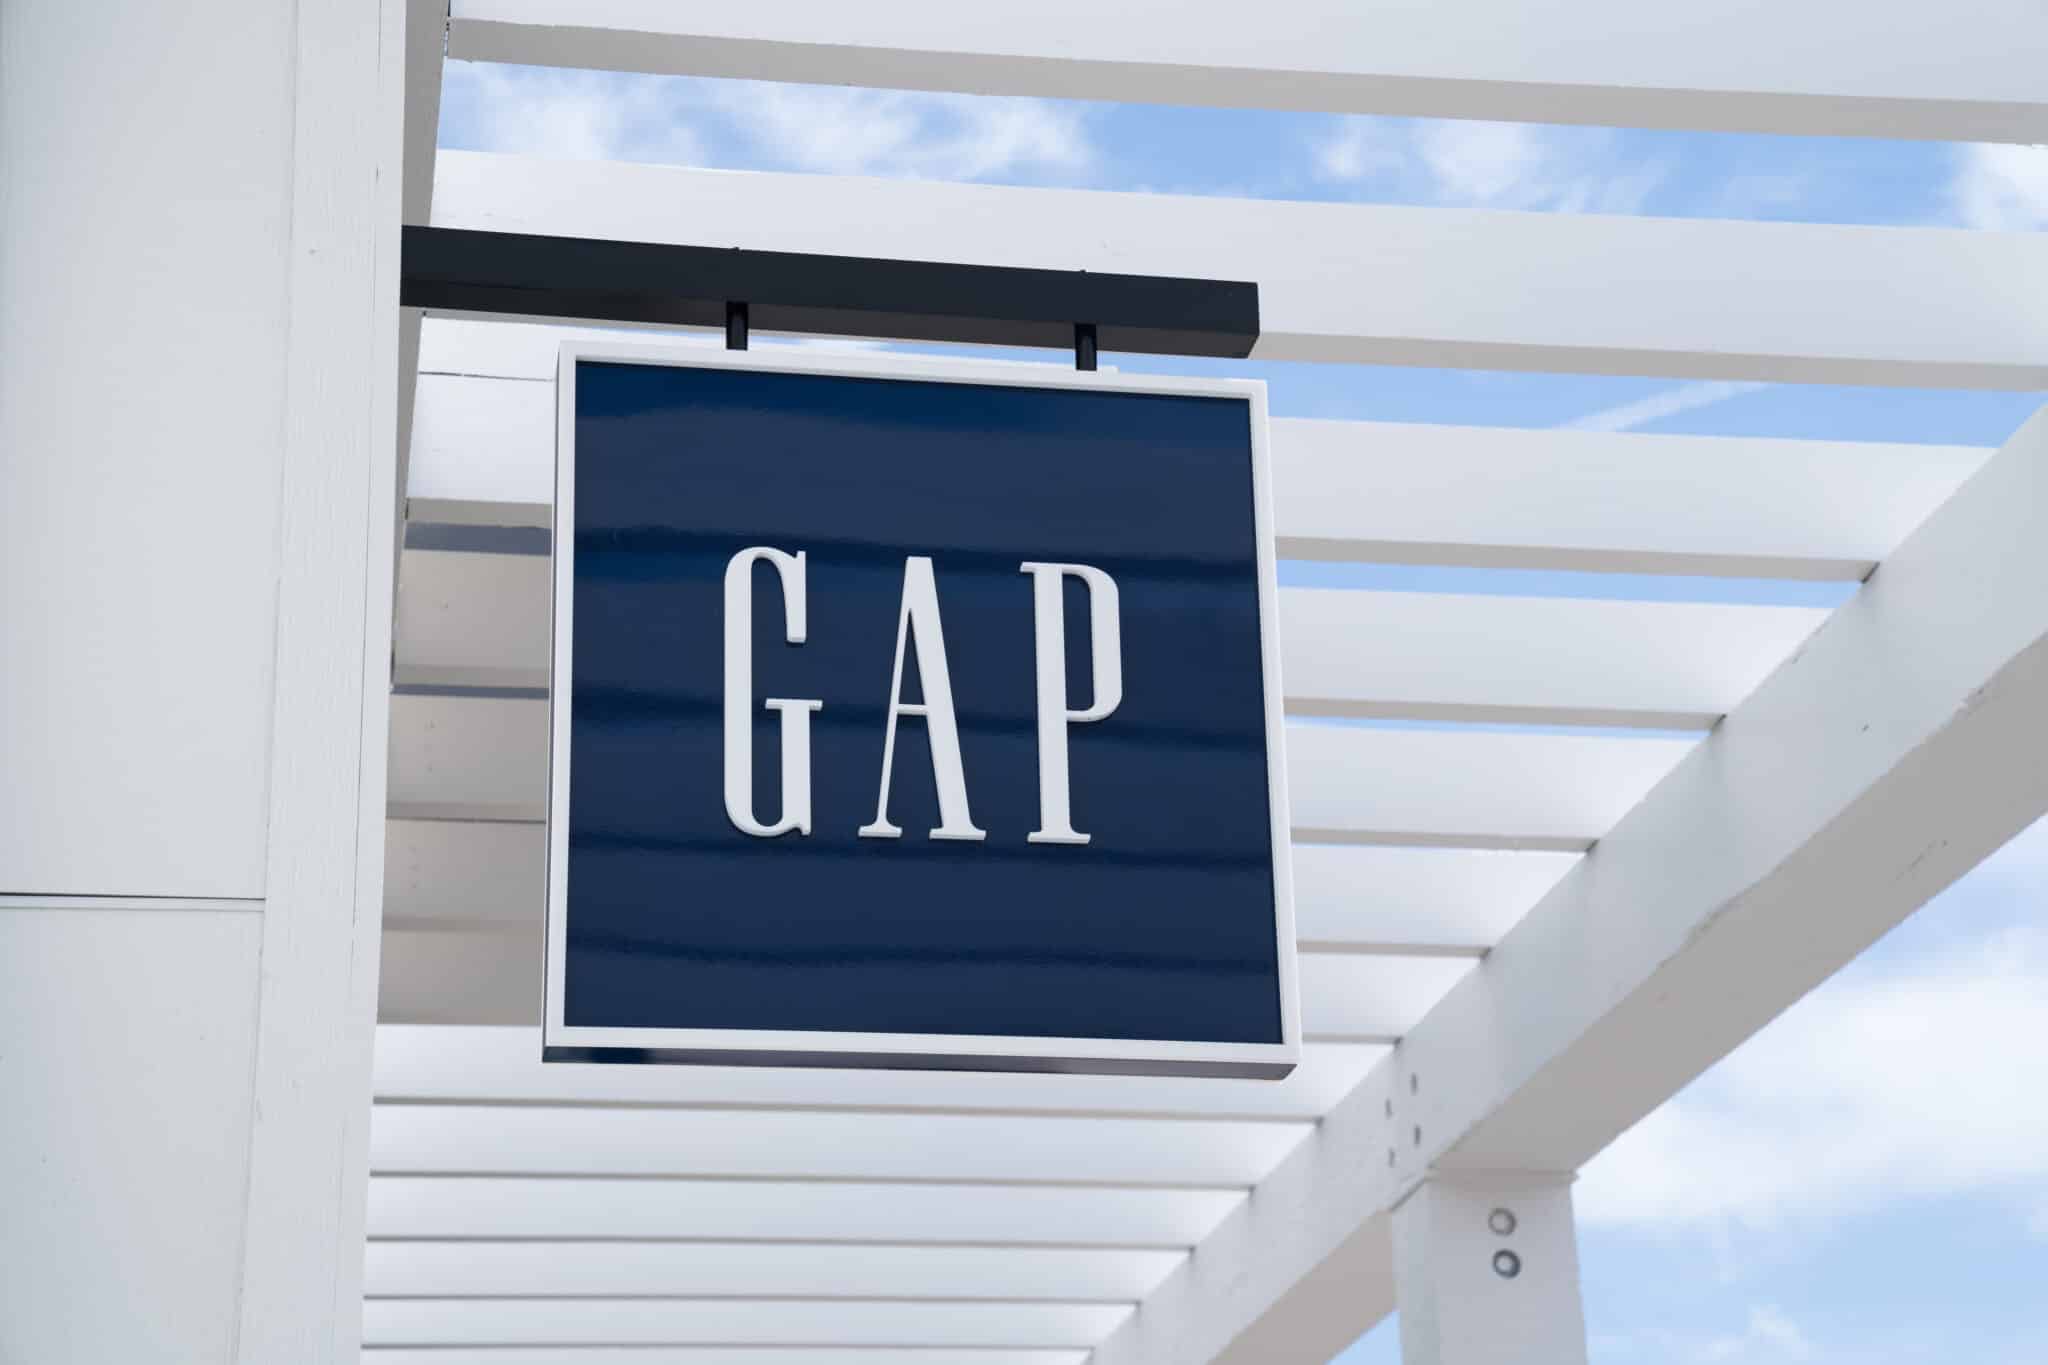 Imagen del cartel de una tienda de Gap.